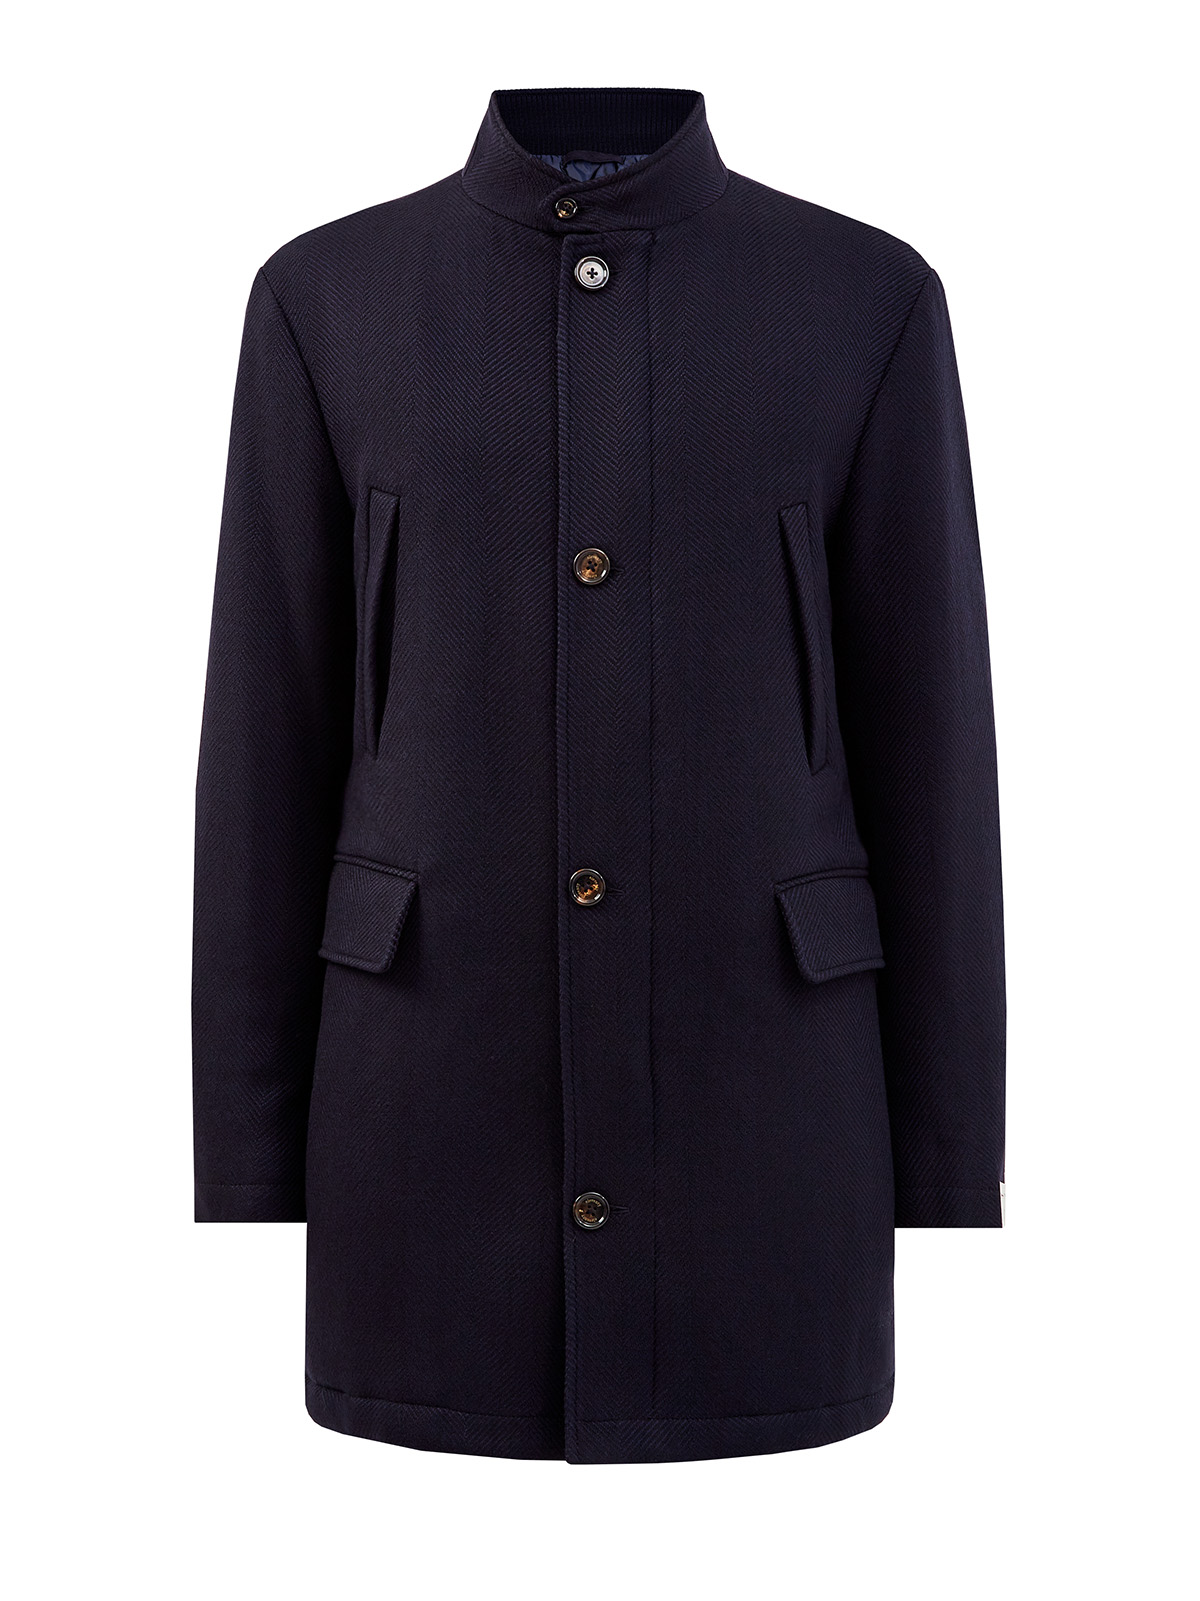 Шерстяное пальто оттенка индиго в классическом стиле ELEVENTY, цвет синий, размер 54;56;58